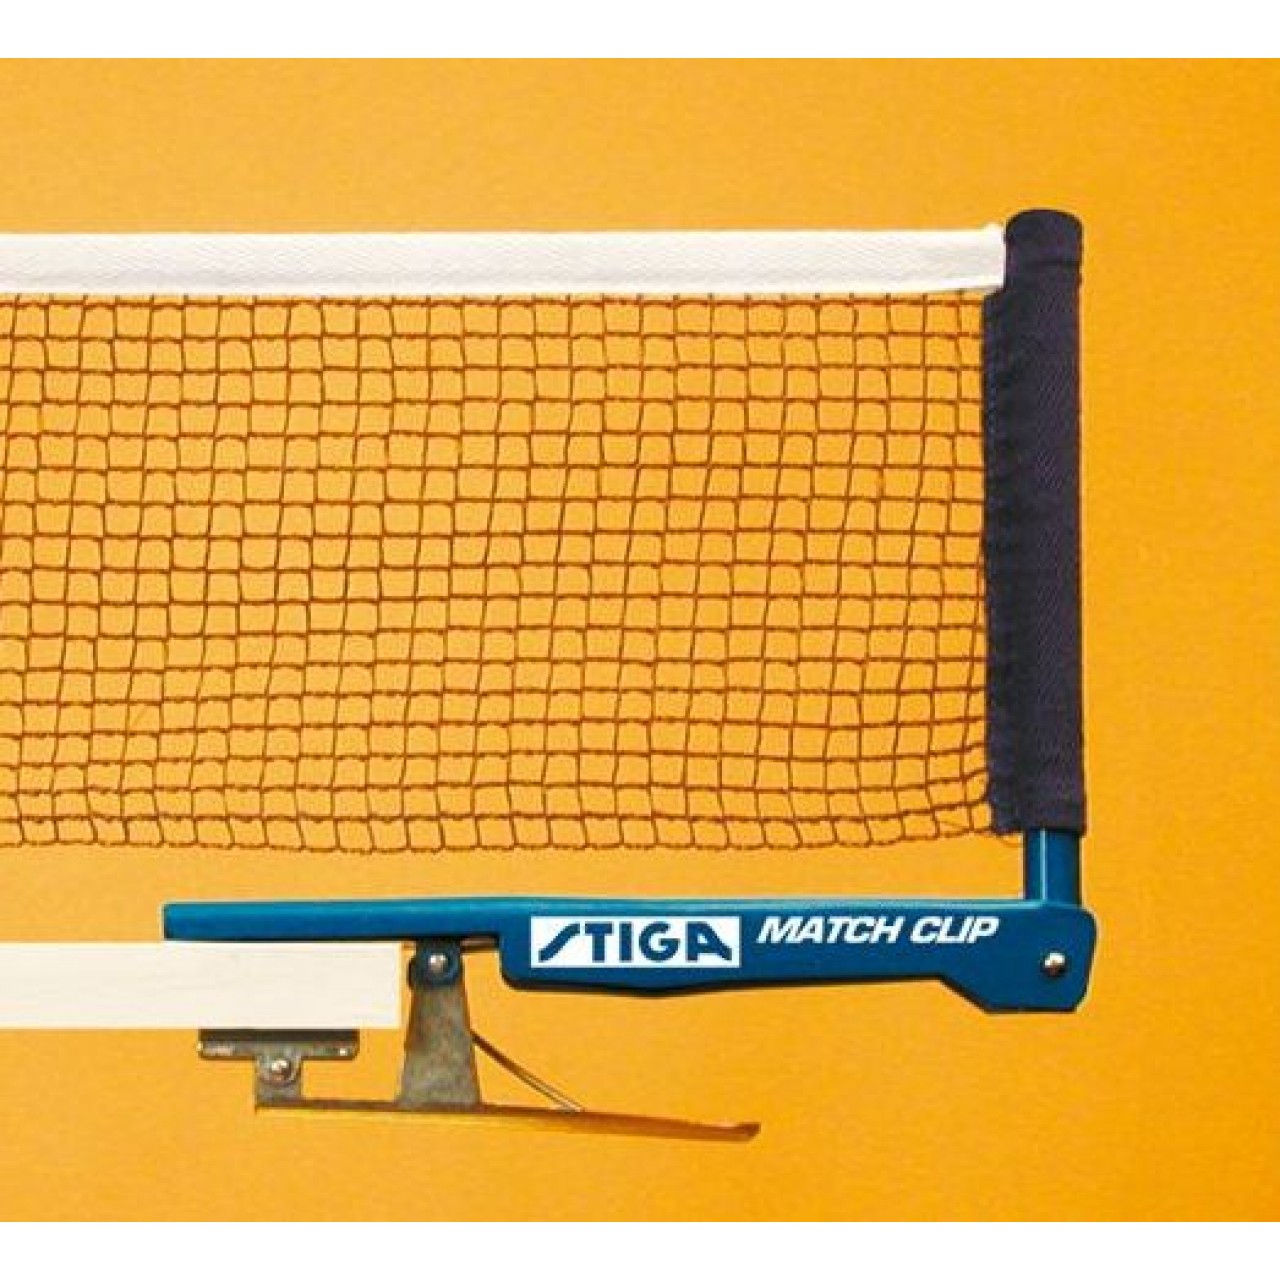 Теннисная сетка Stiga